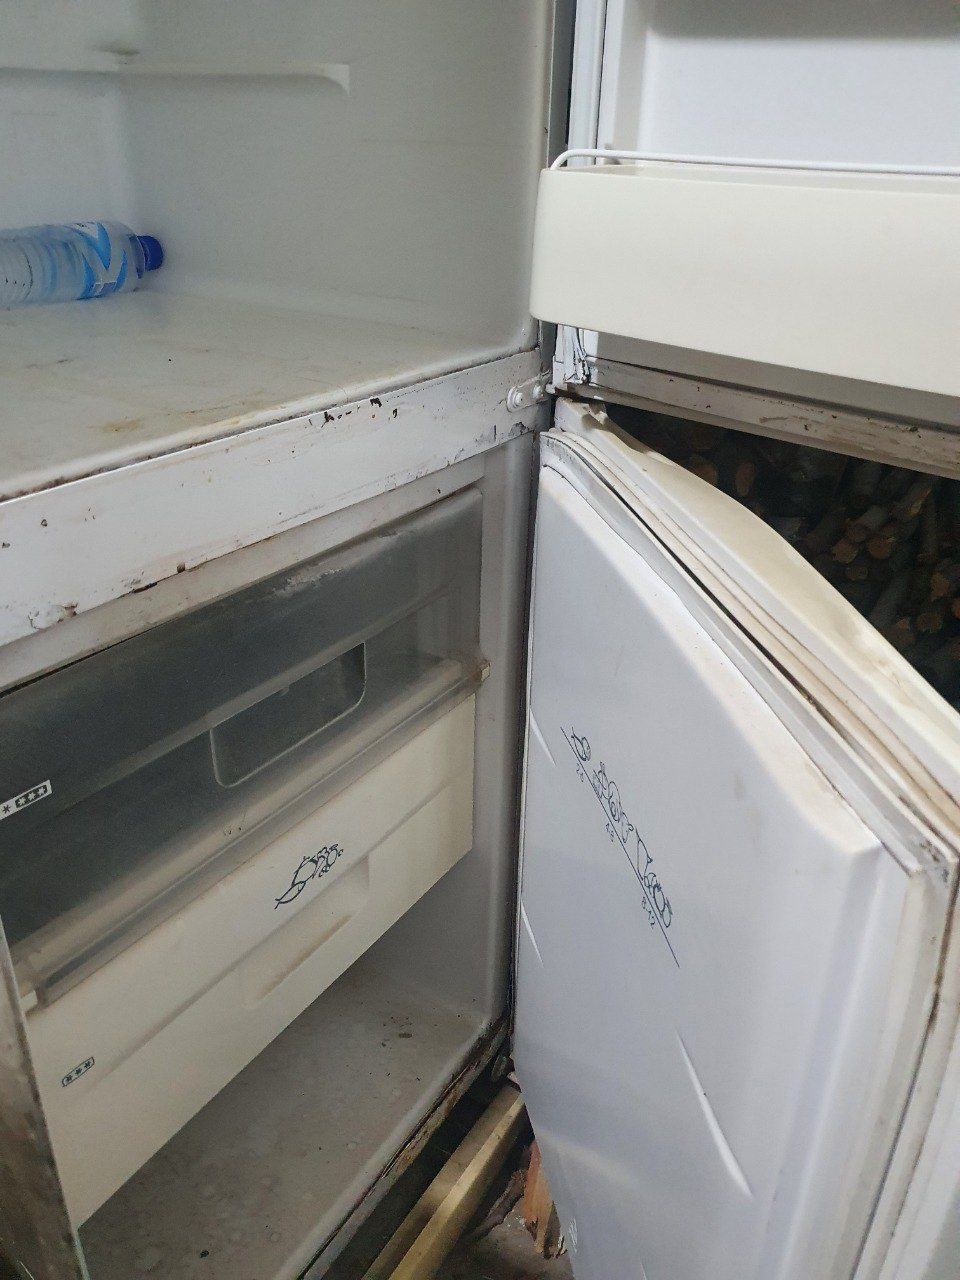 Холодильник Снайге,двухкамерный